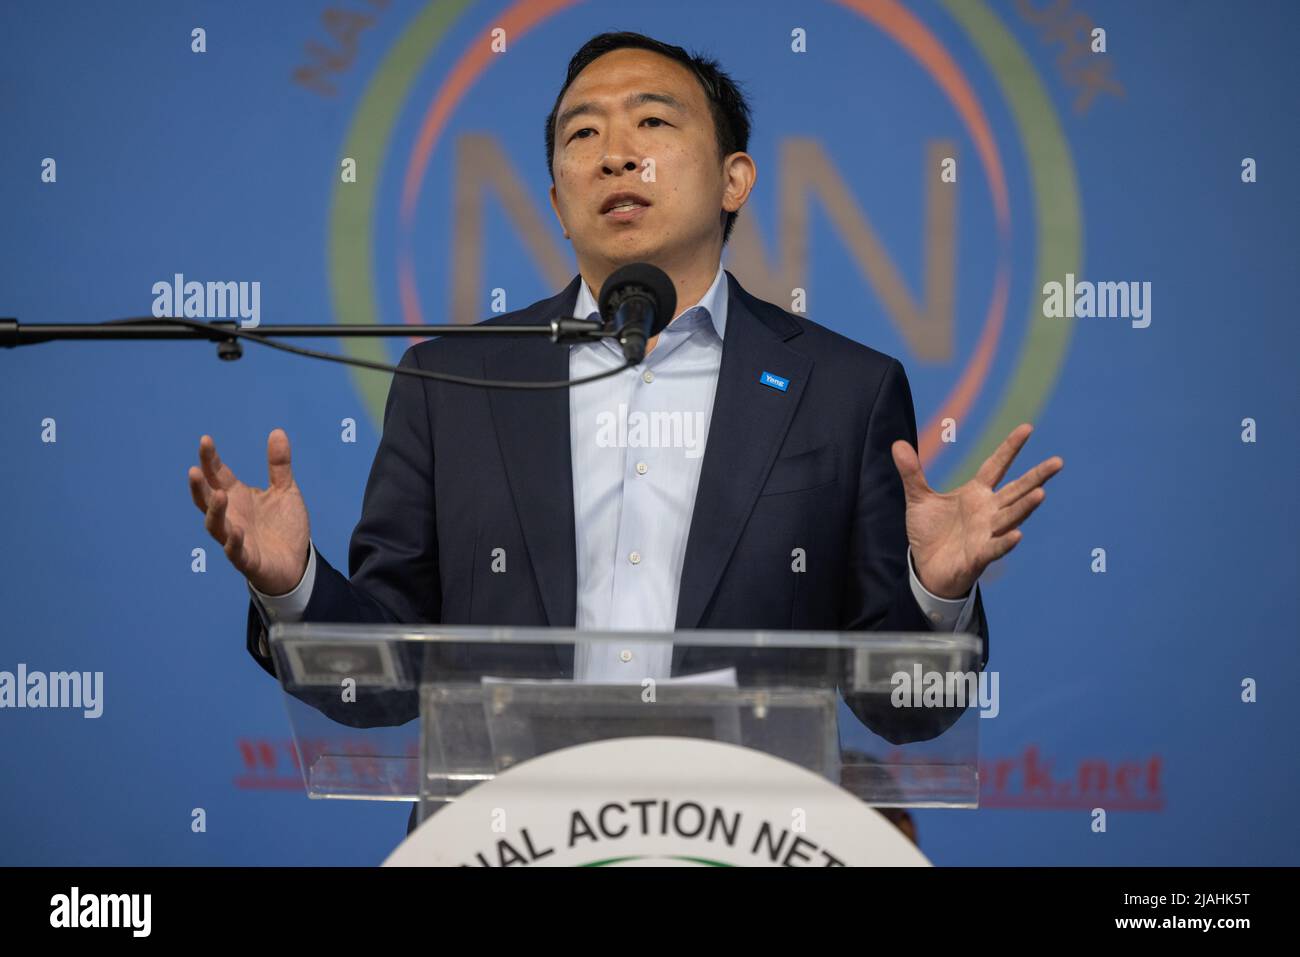 NEW YORK, New York – 12 juin 2021 : le candidat à la mairie de New York, Andrew Yang, fait campagne au siège de la Chambre de justice du réseau national d'action. Banque D'Images